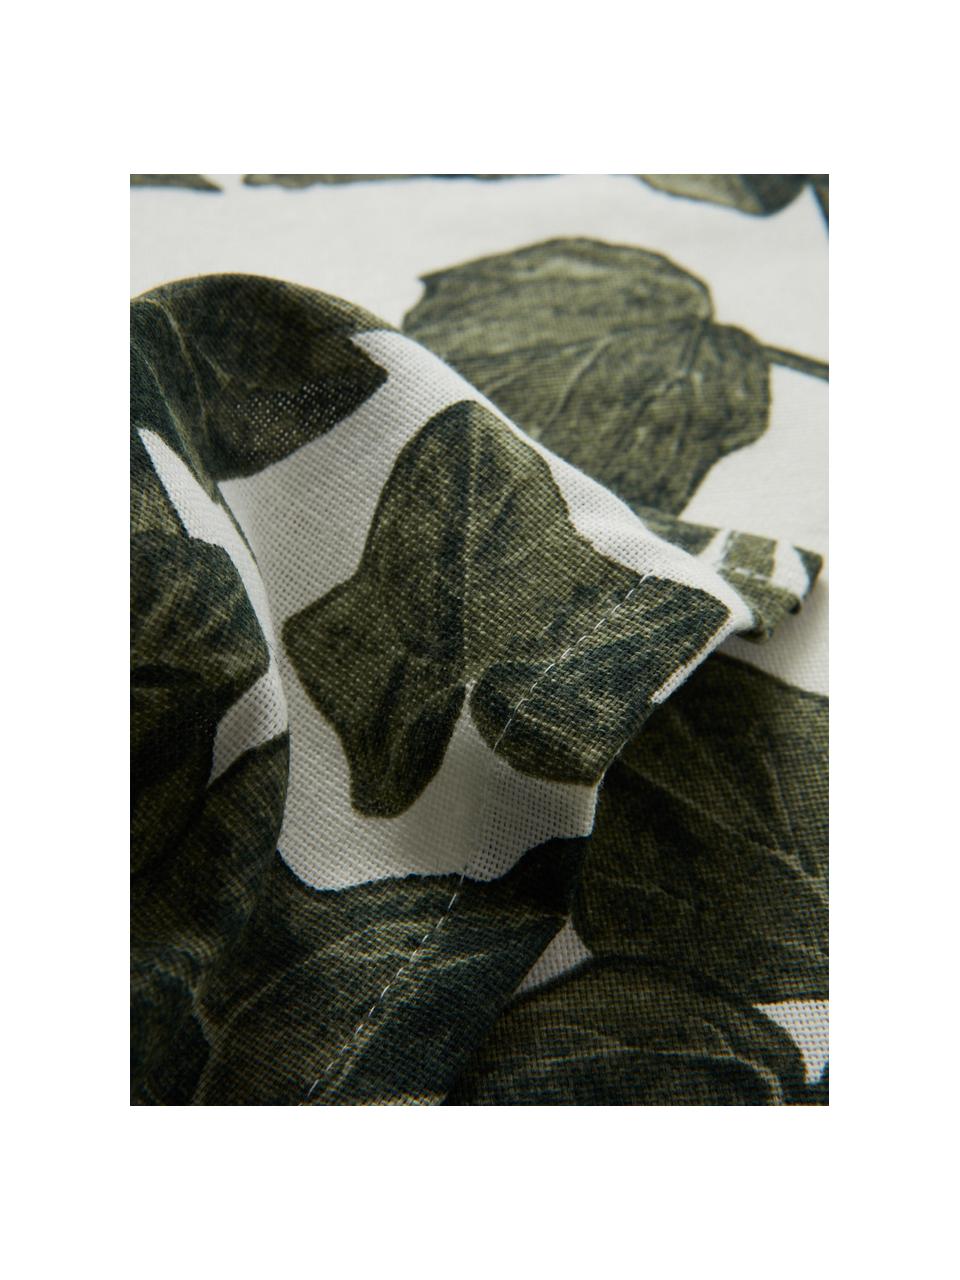 Tafelkleed Ivy, verschillende formaten, 100% katoen, Donkergroen, zwart, gebroken wit, 6-8 personen (B 145 x L 250 cm)